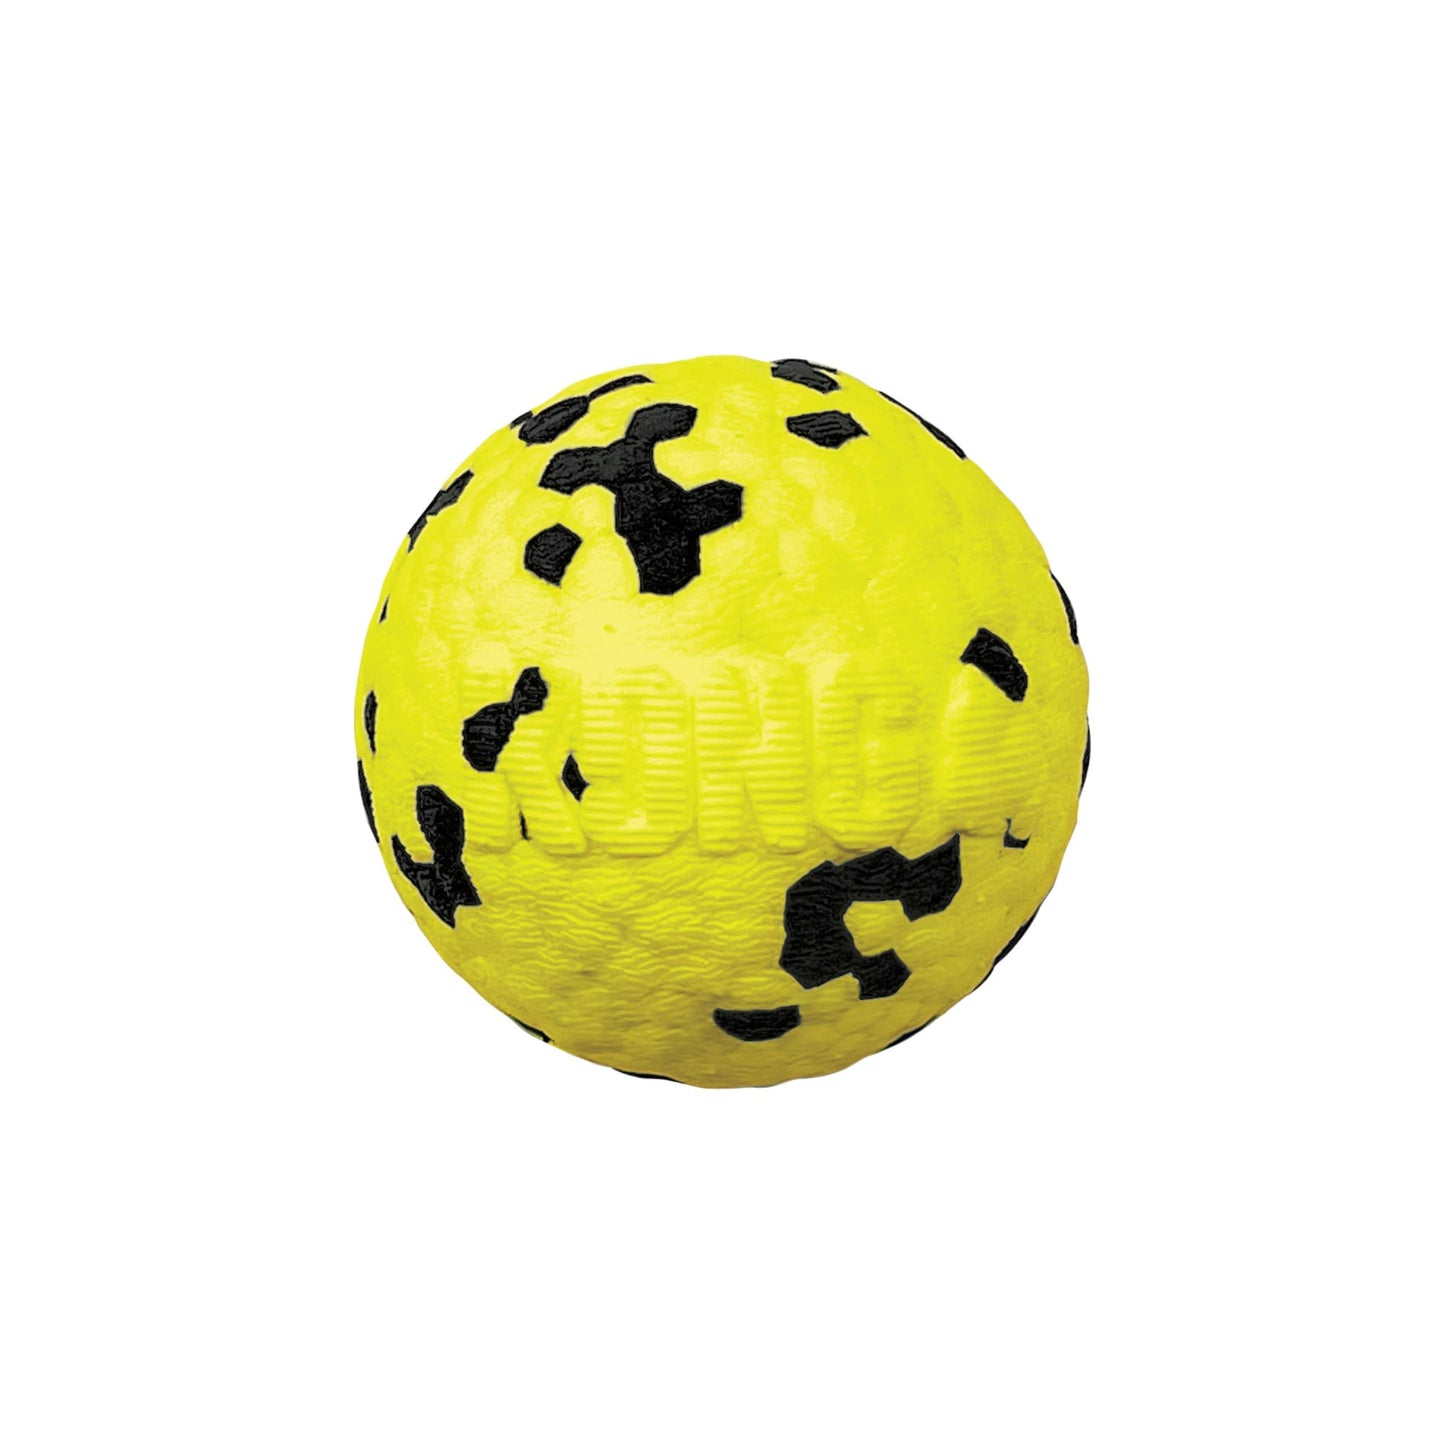 KONG Reflex Ball Dog Toy, Small, Yellow